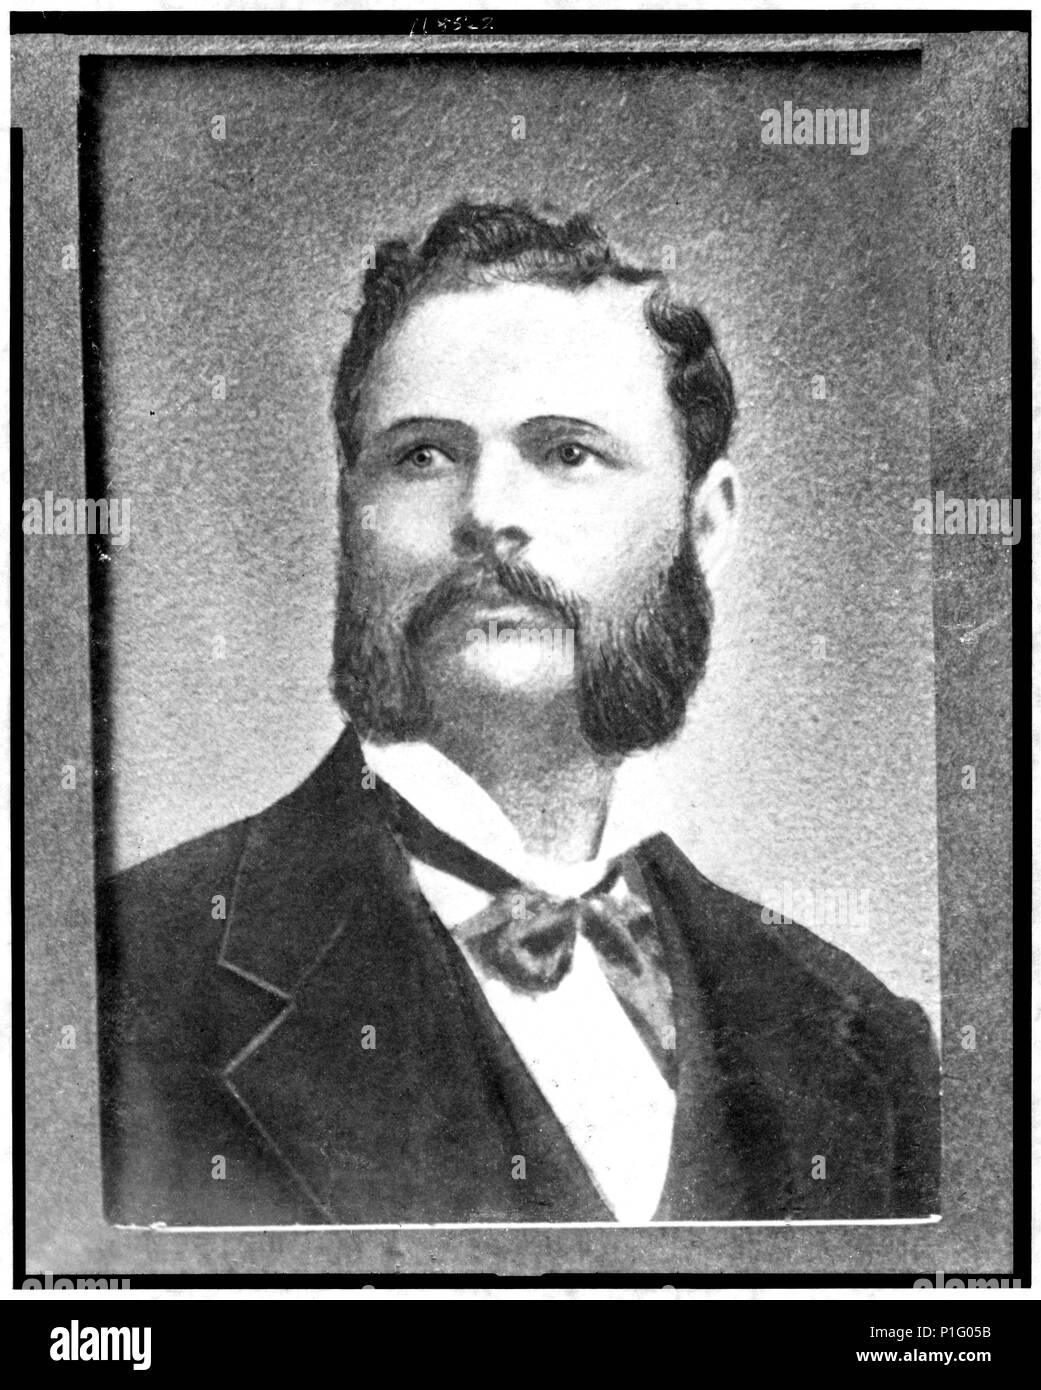 Thomas Shaw (1846 - 23 giugno 1895) era un Buffalo Soldier nell'esercito degli Stati Uniti e un destinatario di America più alta decorazione militare - Medaglia d'onore - per le sue azioni in guerre indiane del west Foto Stock